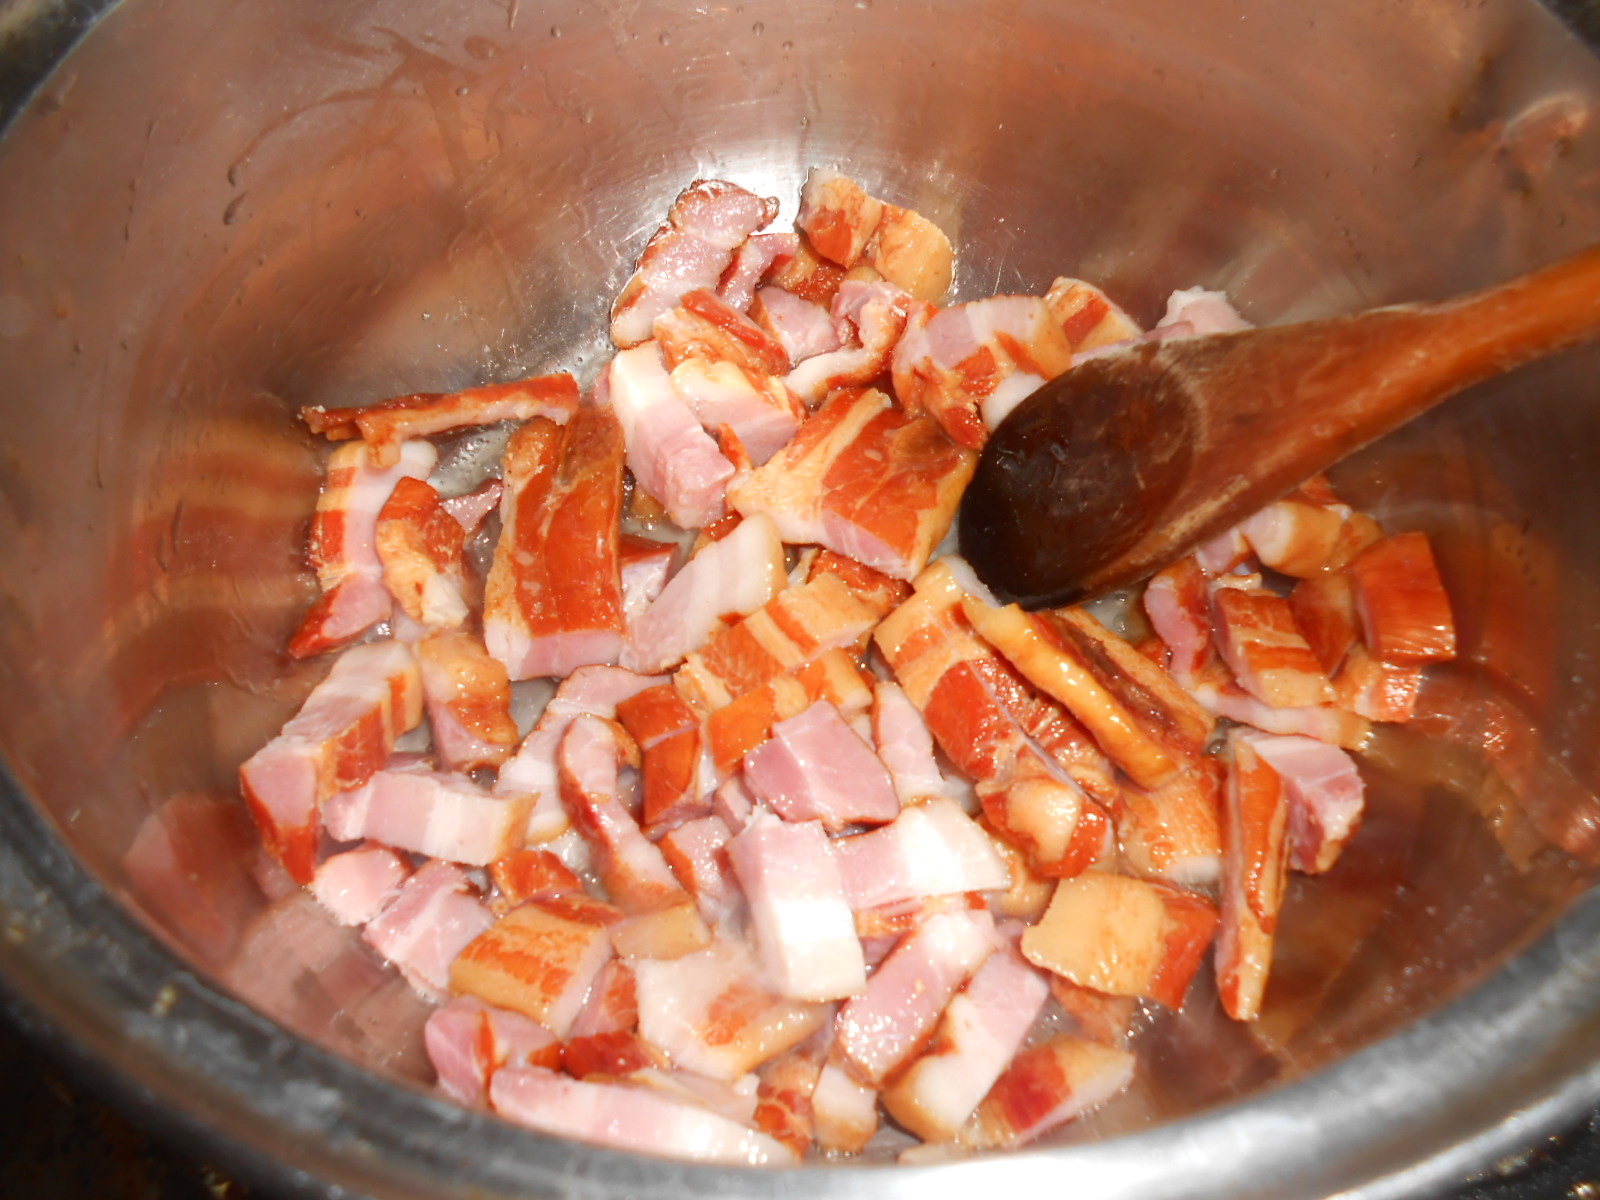 Ciorba de fasole boabe cu piept de porc afumat